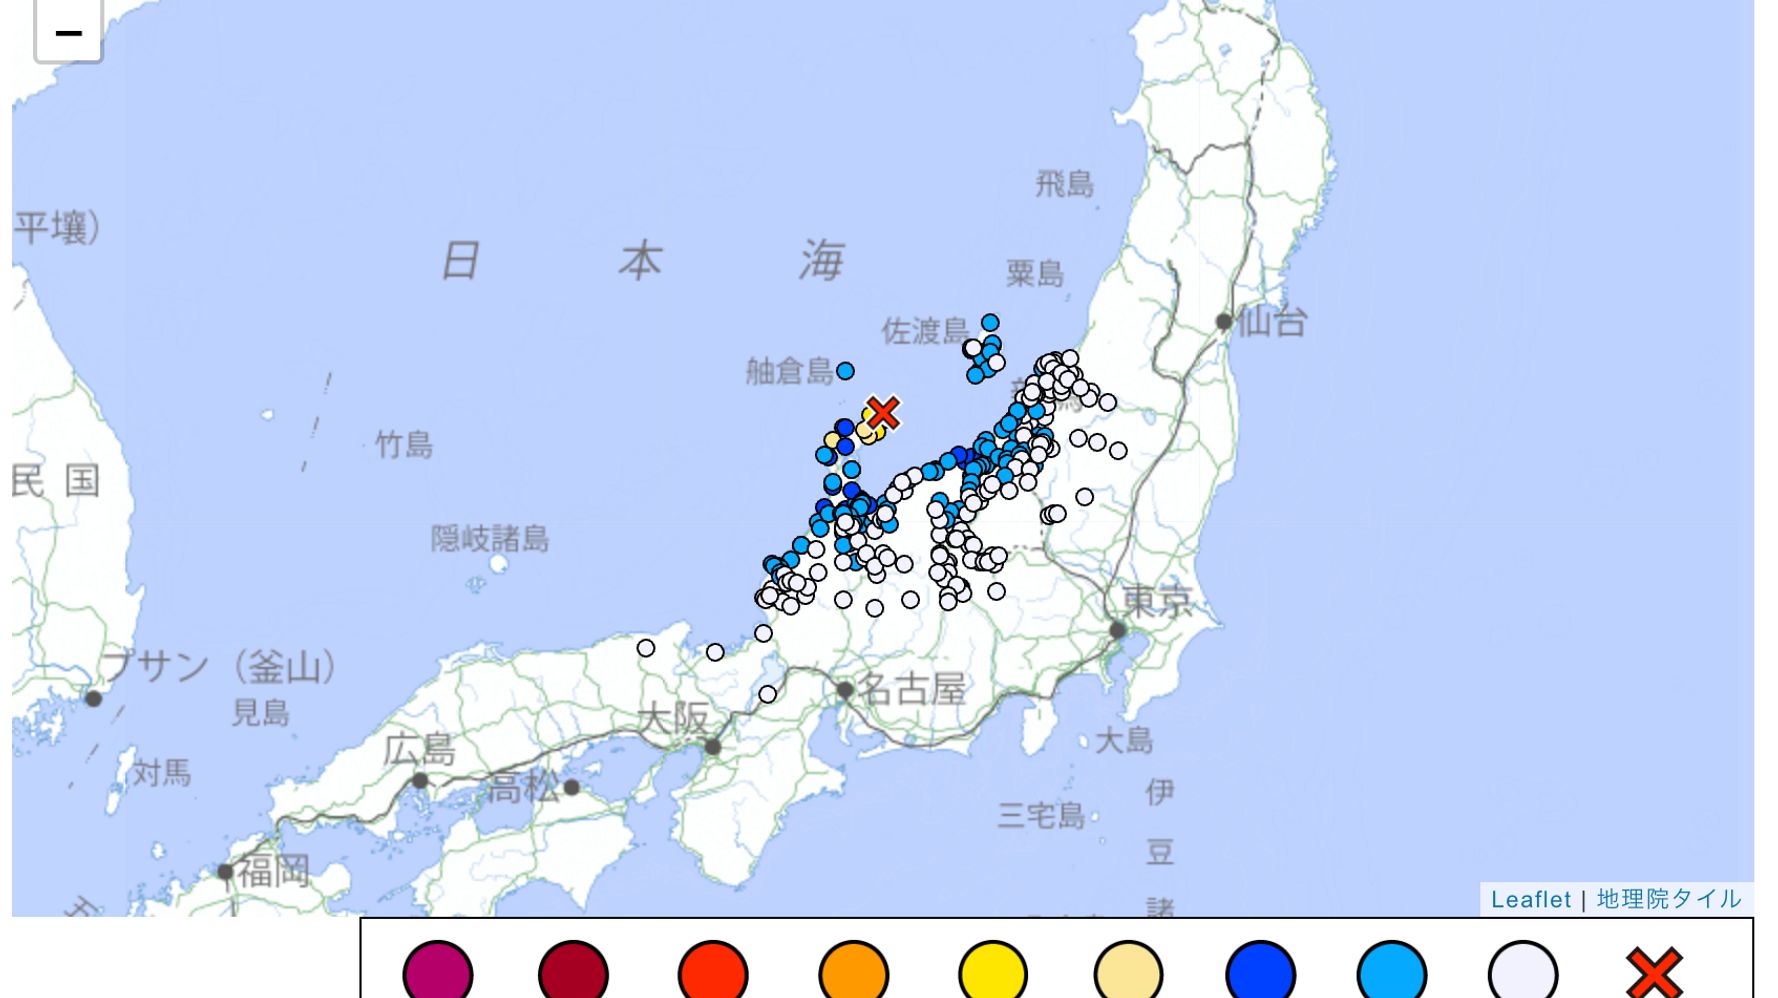 【地震情報】石川県能登地方で震度6弱。津波の心配なし